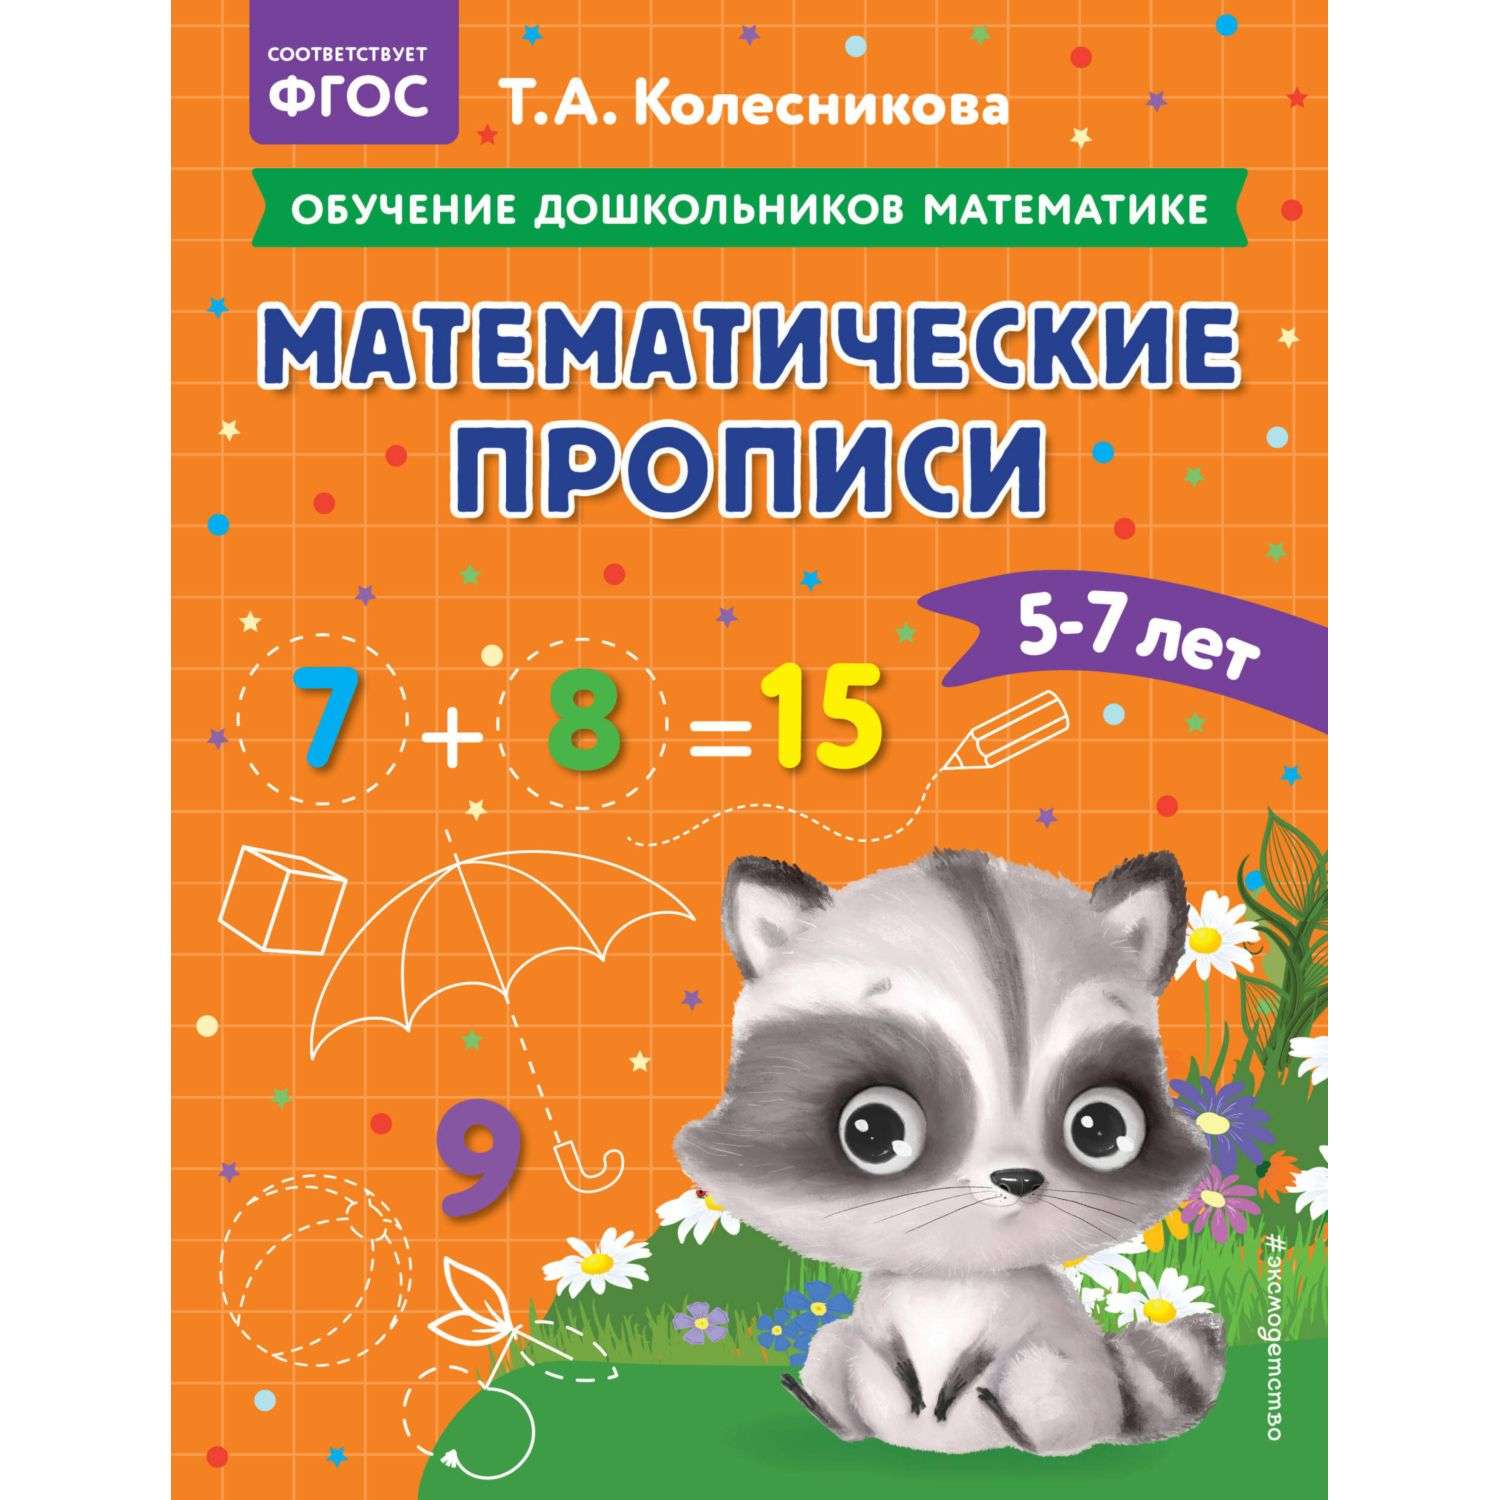 Книга Математические прописи для детей 5-7лет - фото 1